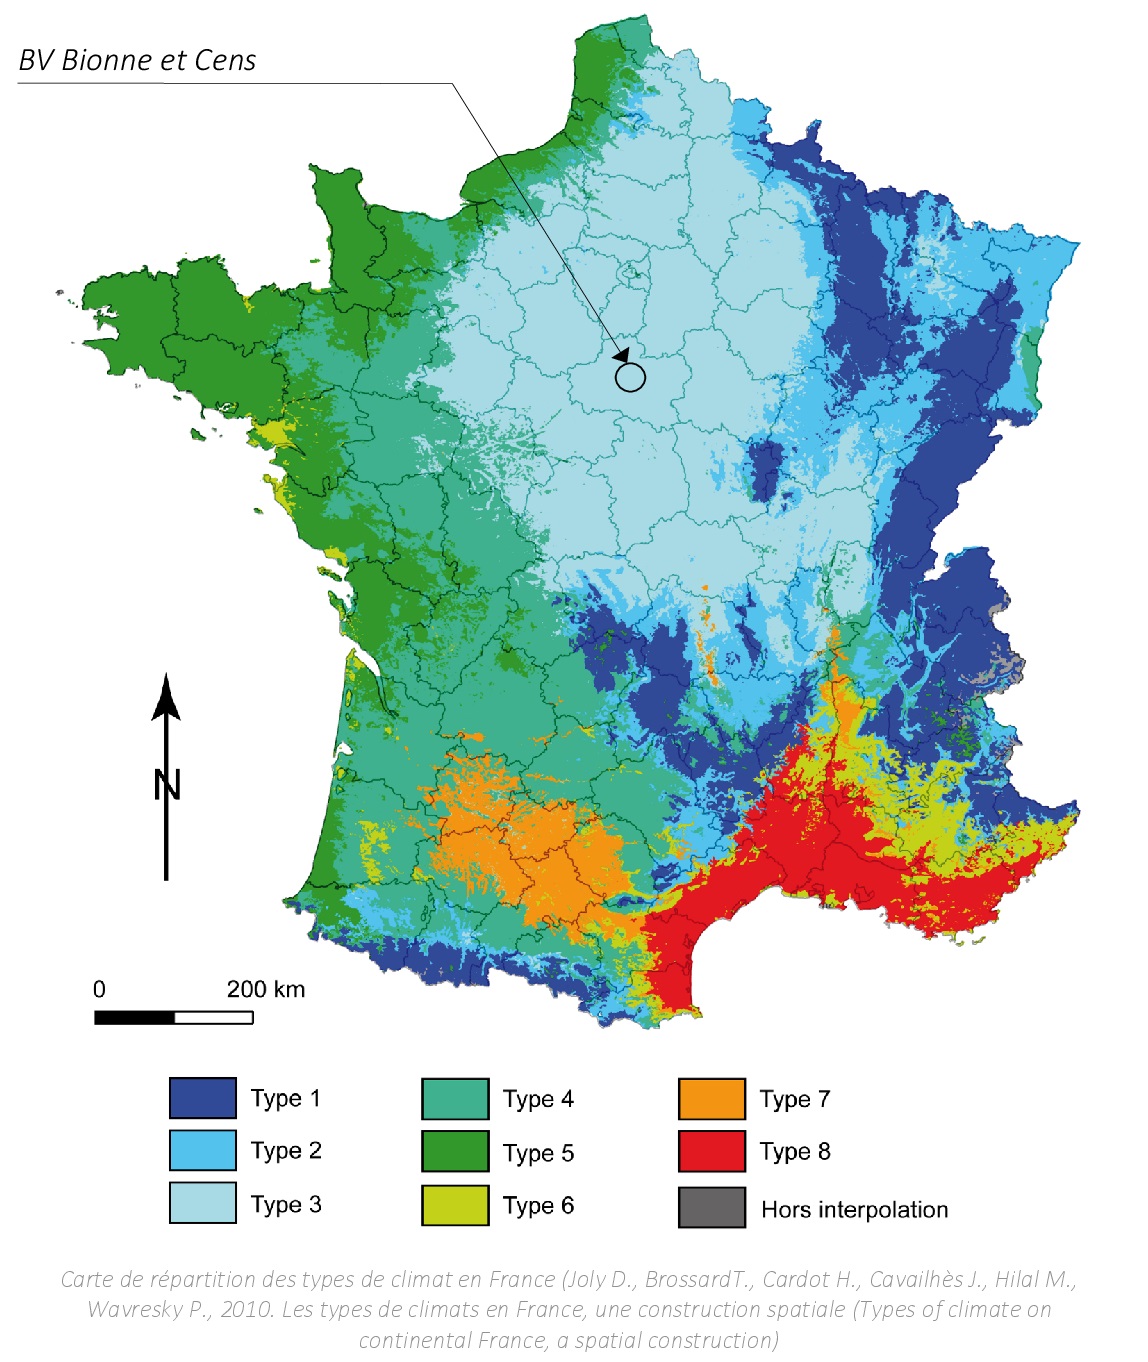 Le niveau d'eau - OTT France